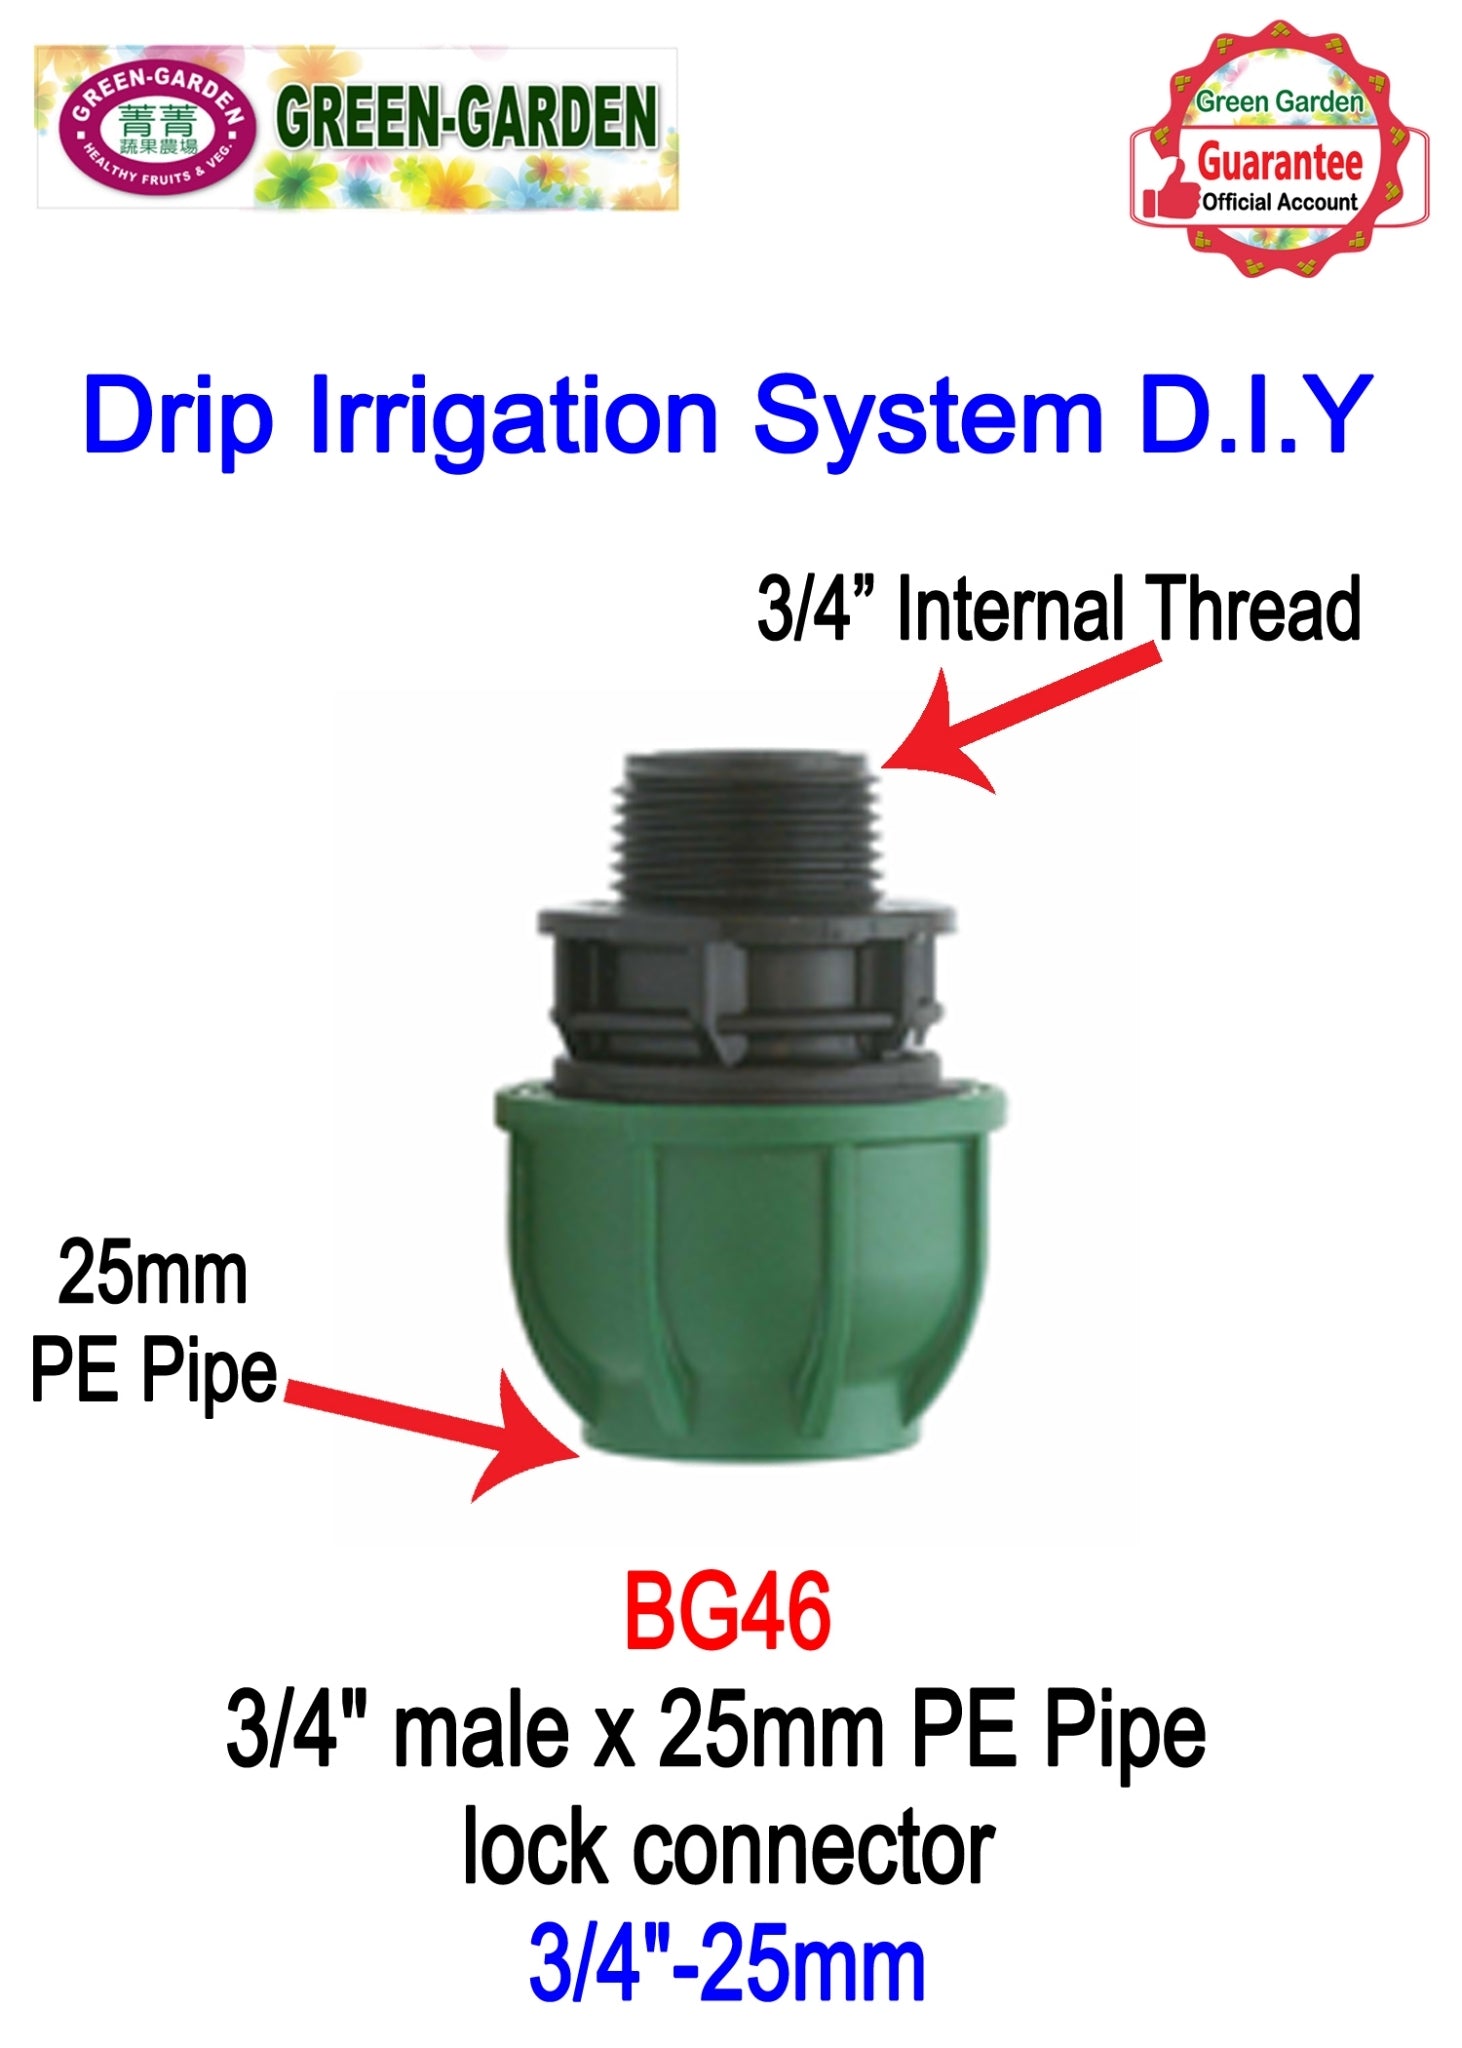 Drip Irrigation System - 3/4" female x 25mm lock connector BG46